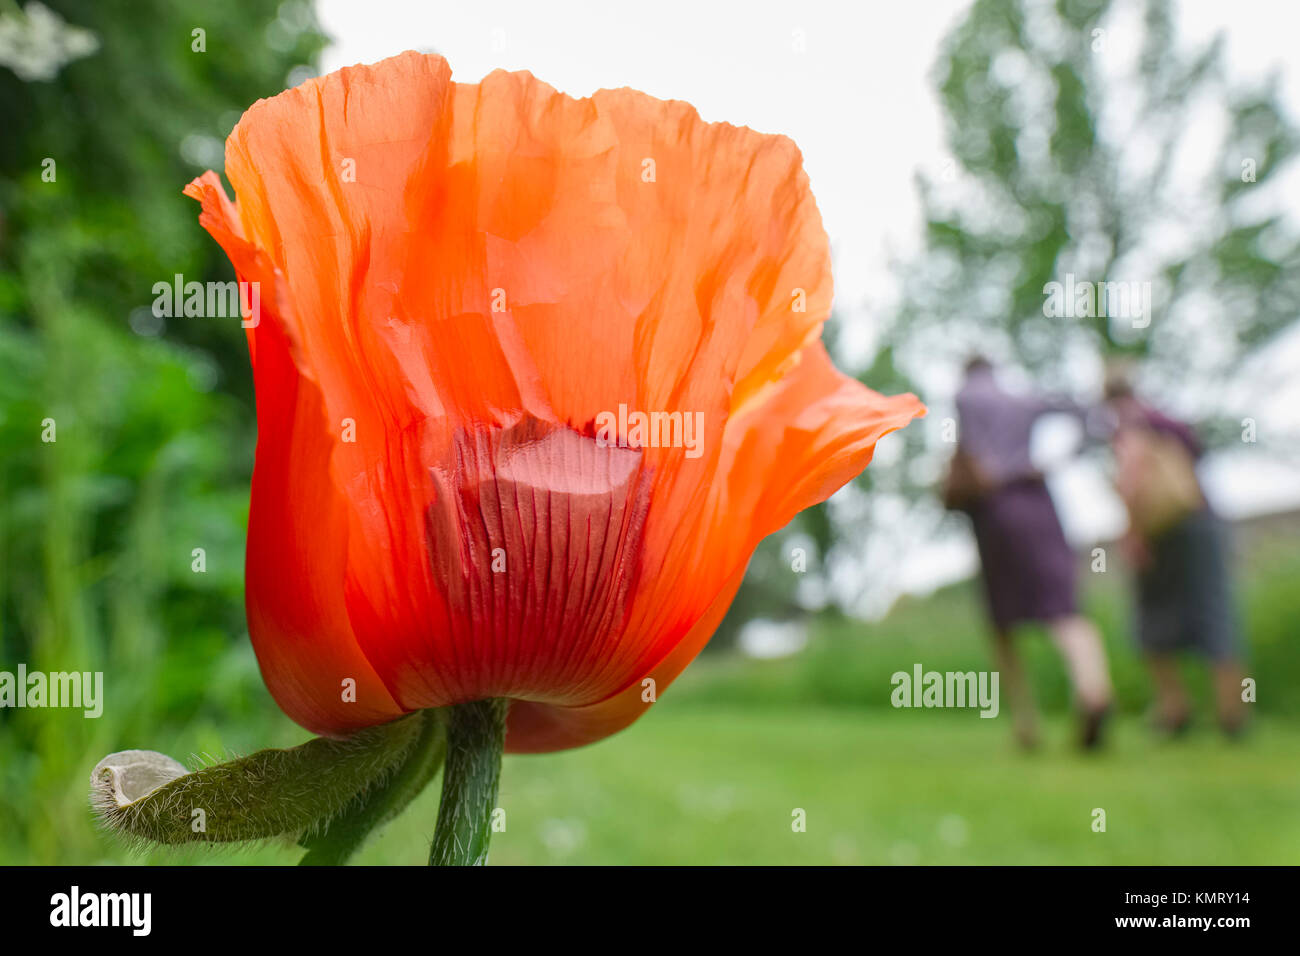 Oriental Poppy flower in garden with people walking Stock Photo